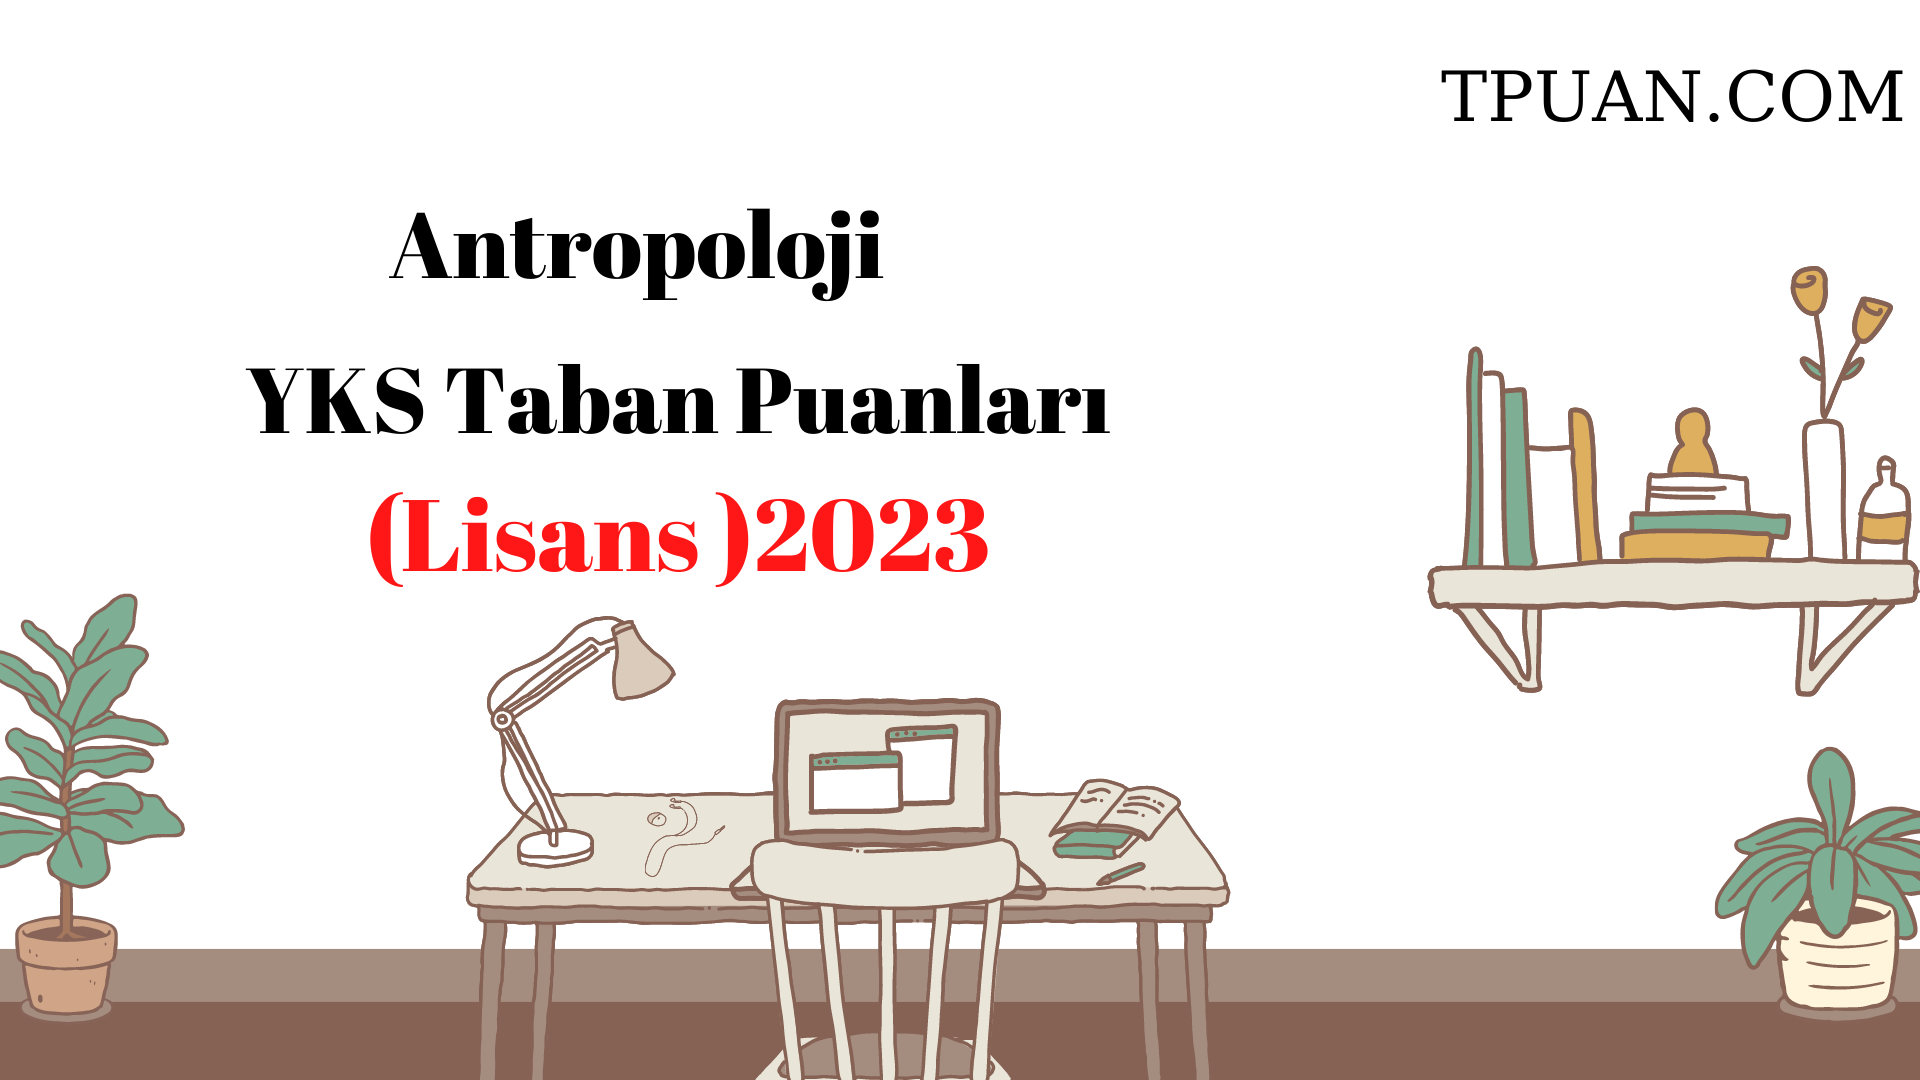  Antropoloji YKS Taban Puanları (4 Yıllık) 2023